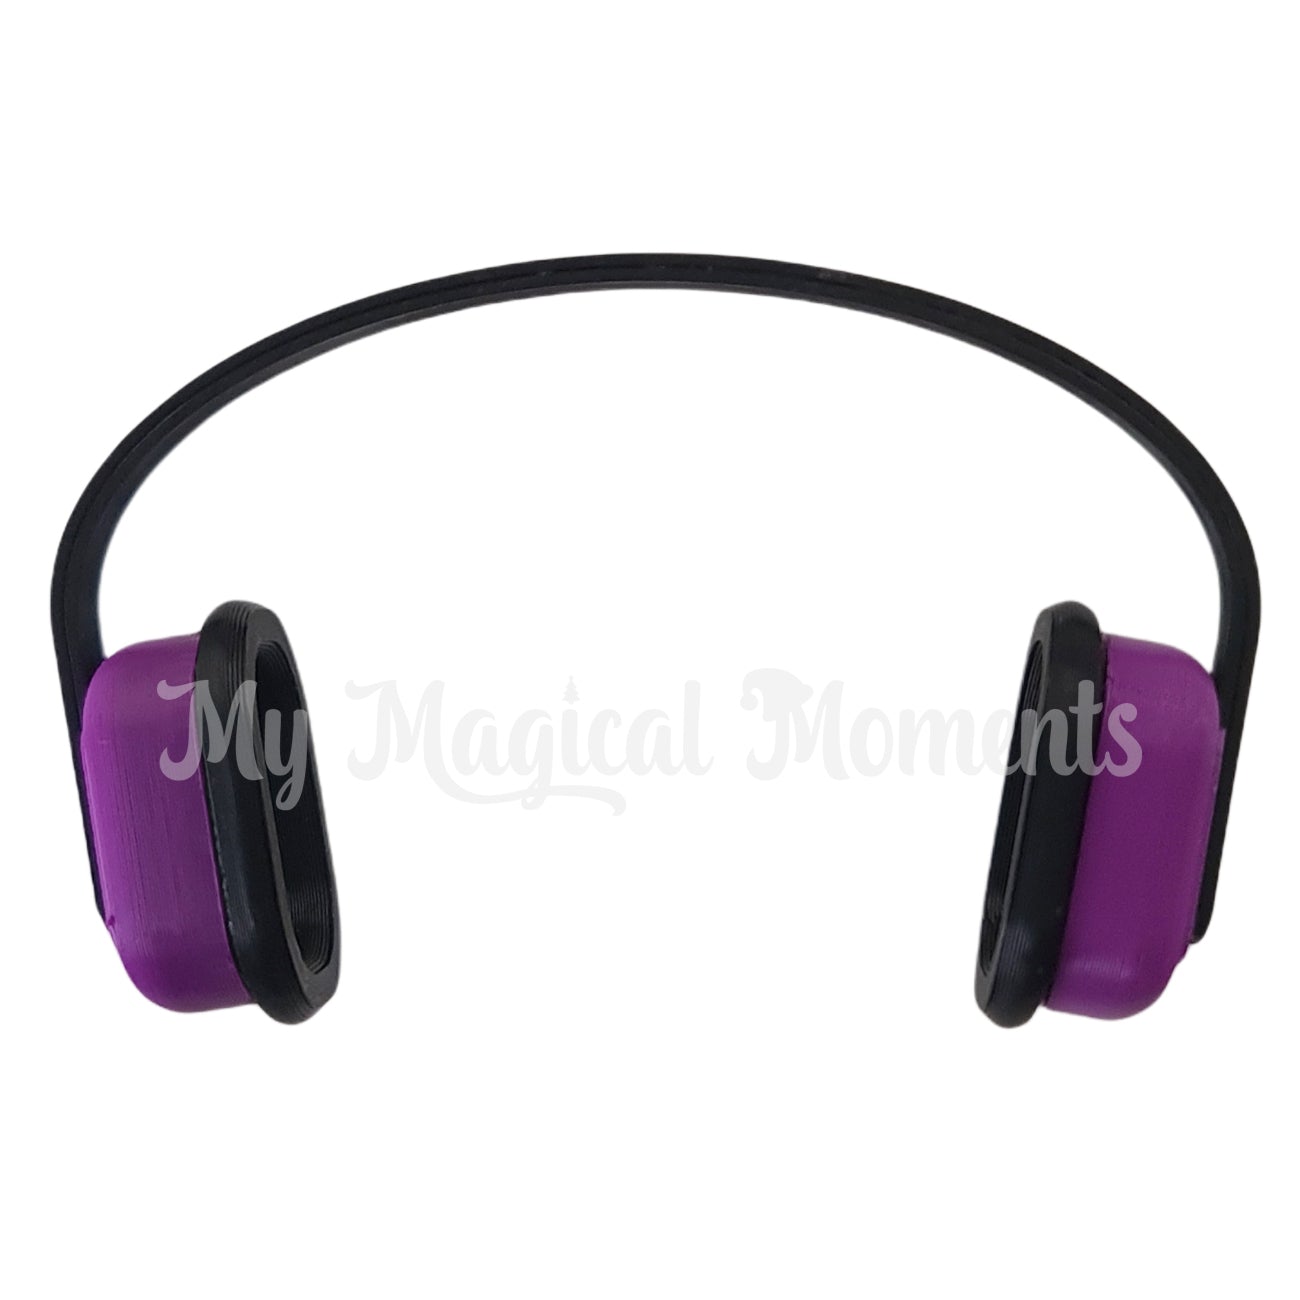 Elf Sized sensory headphones - purple